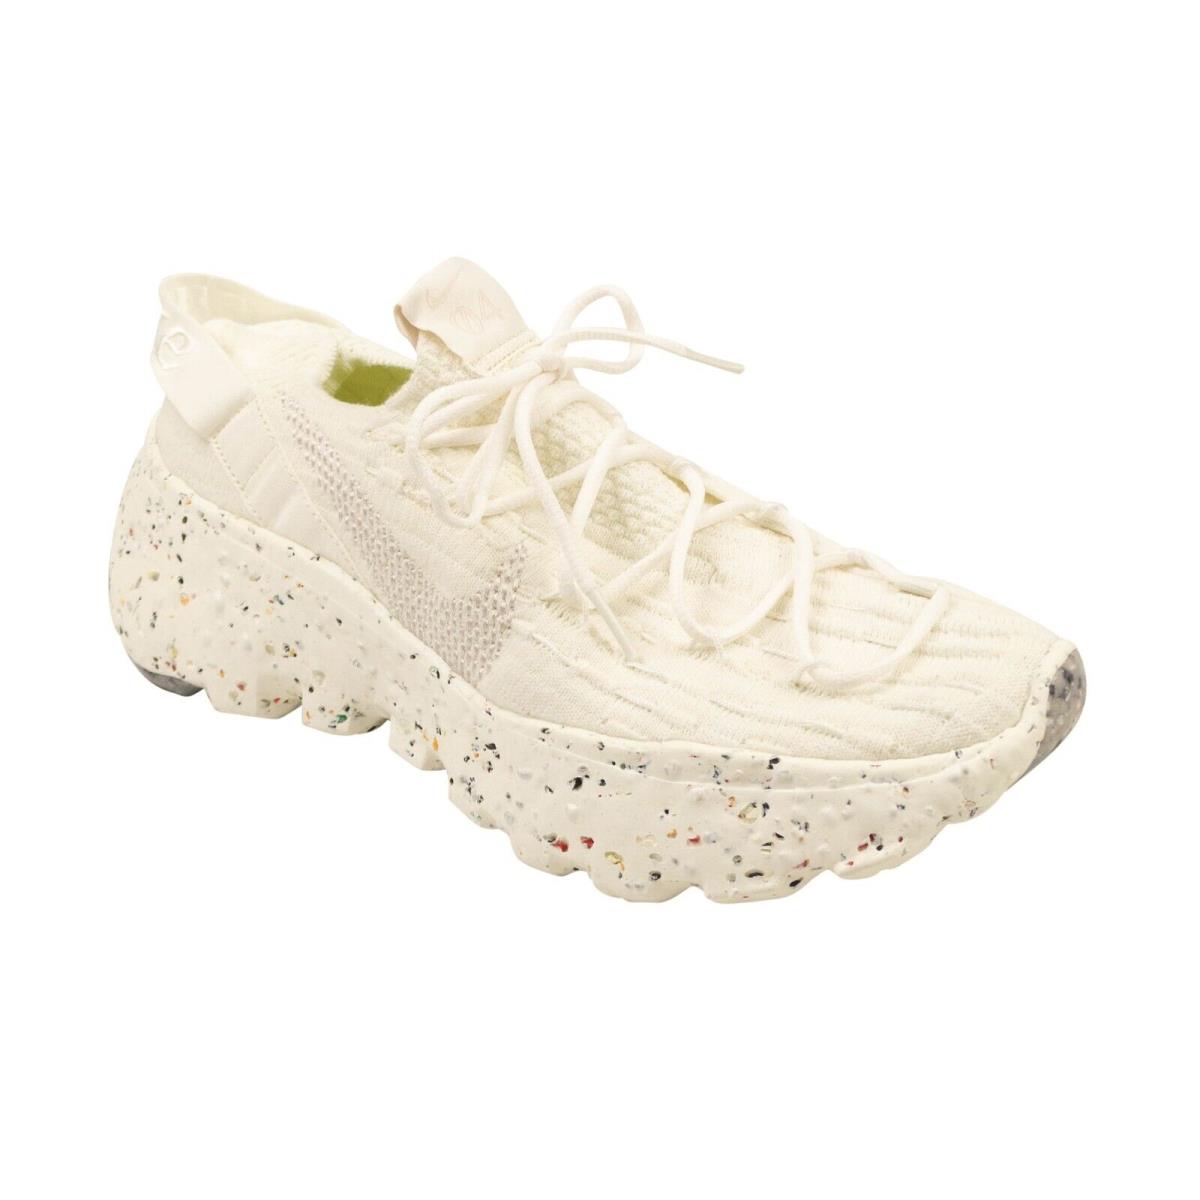 Nike White Wmns Space Hippie 04 Sneakers Size 10.5/42.5 - White